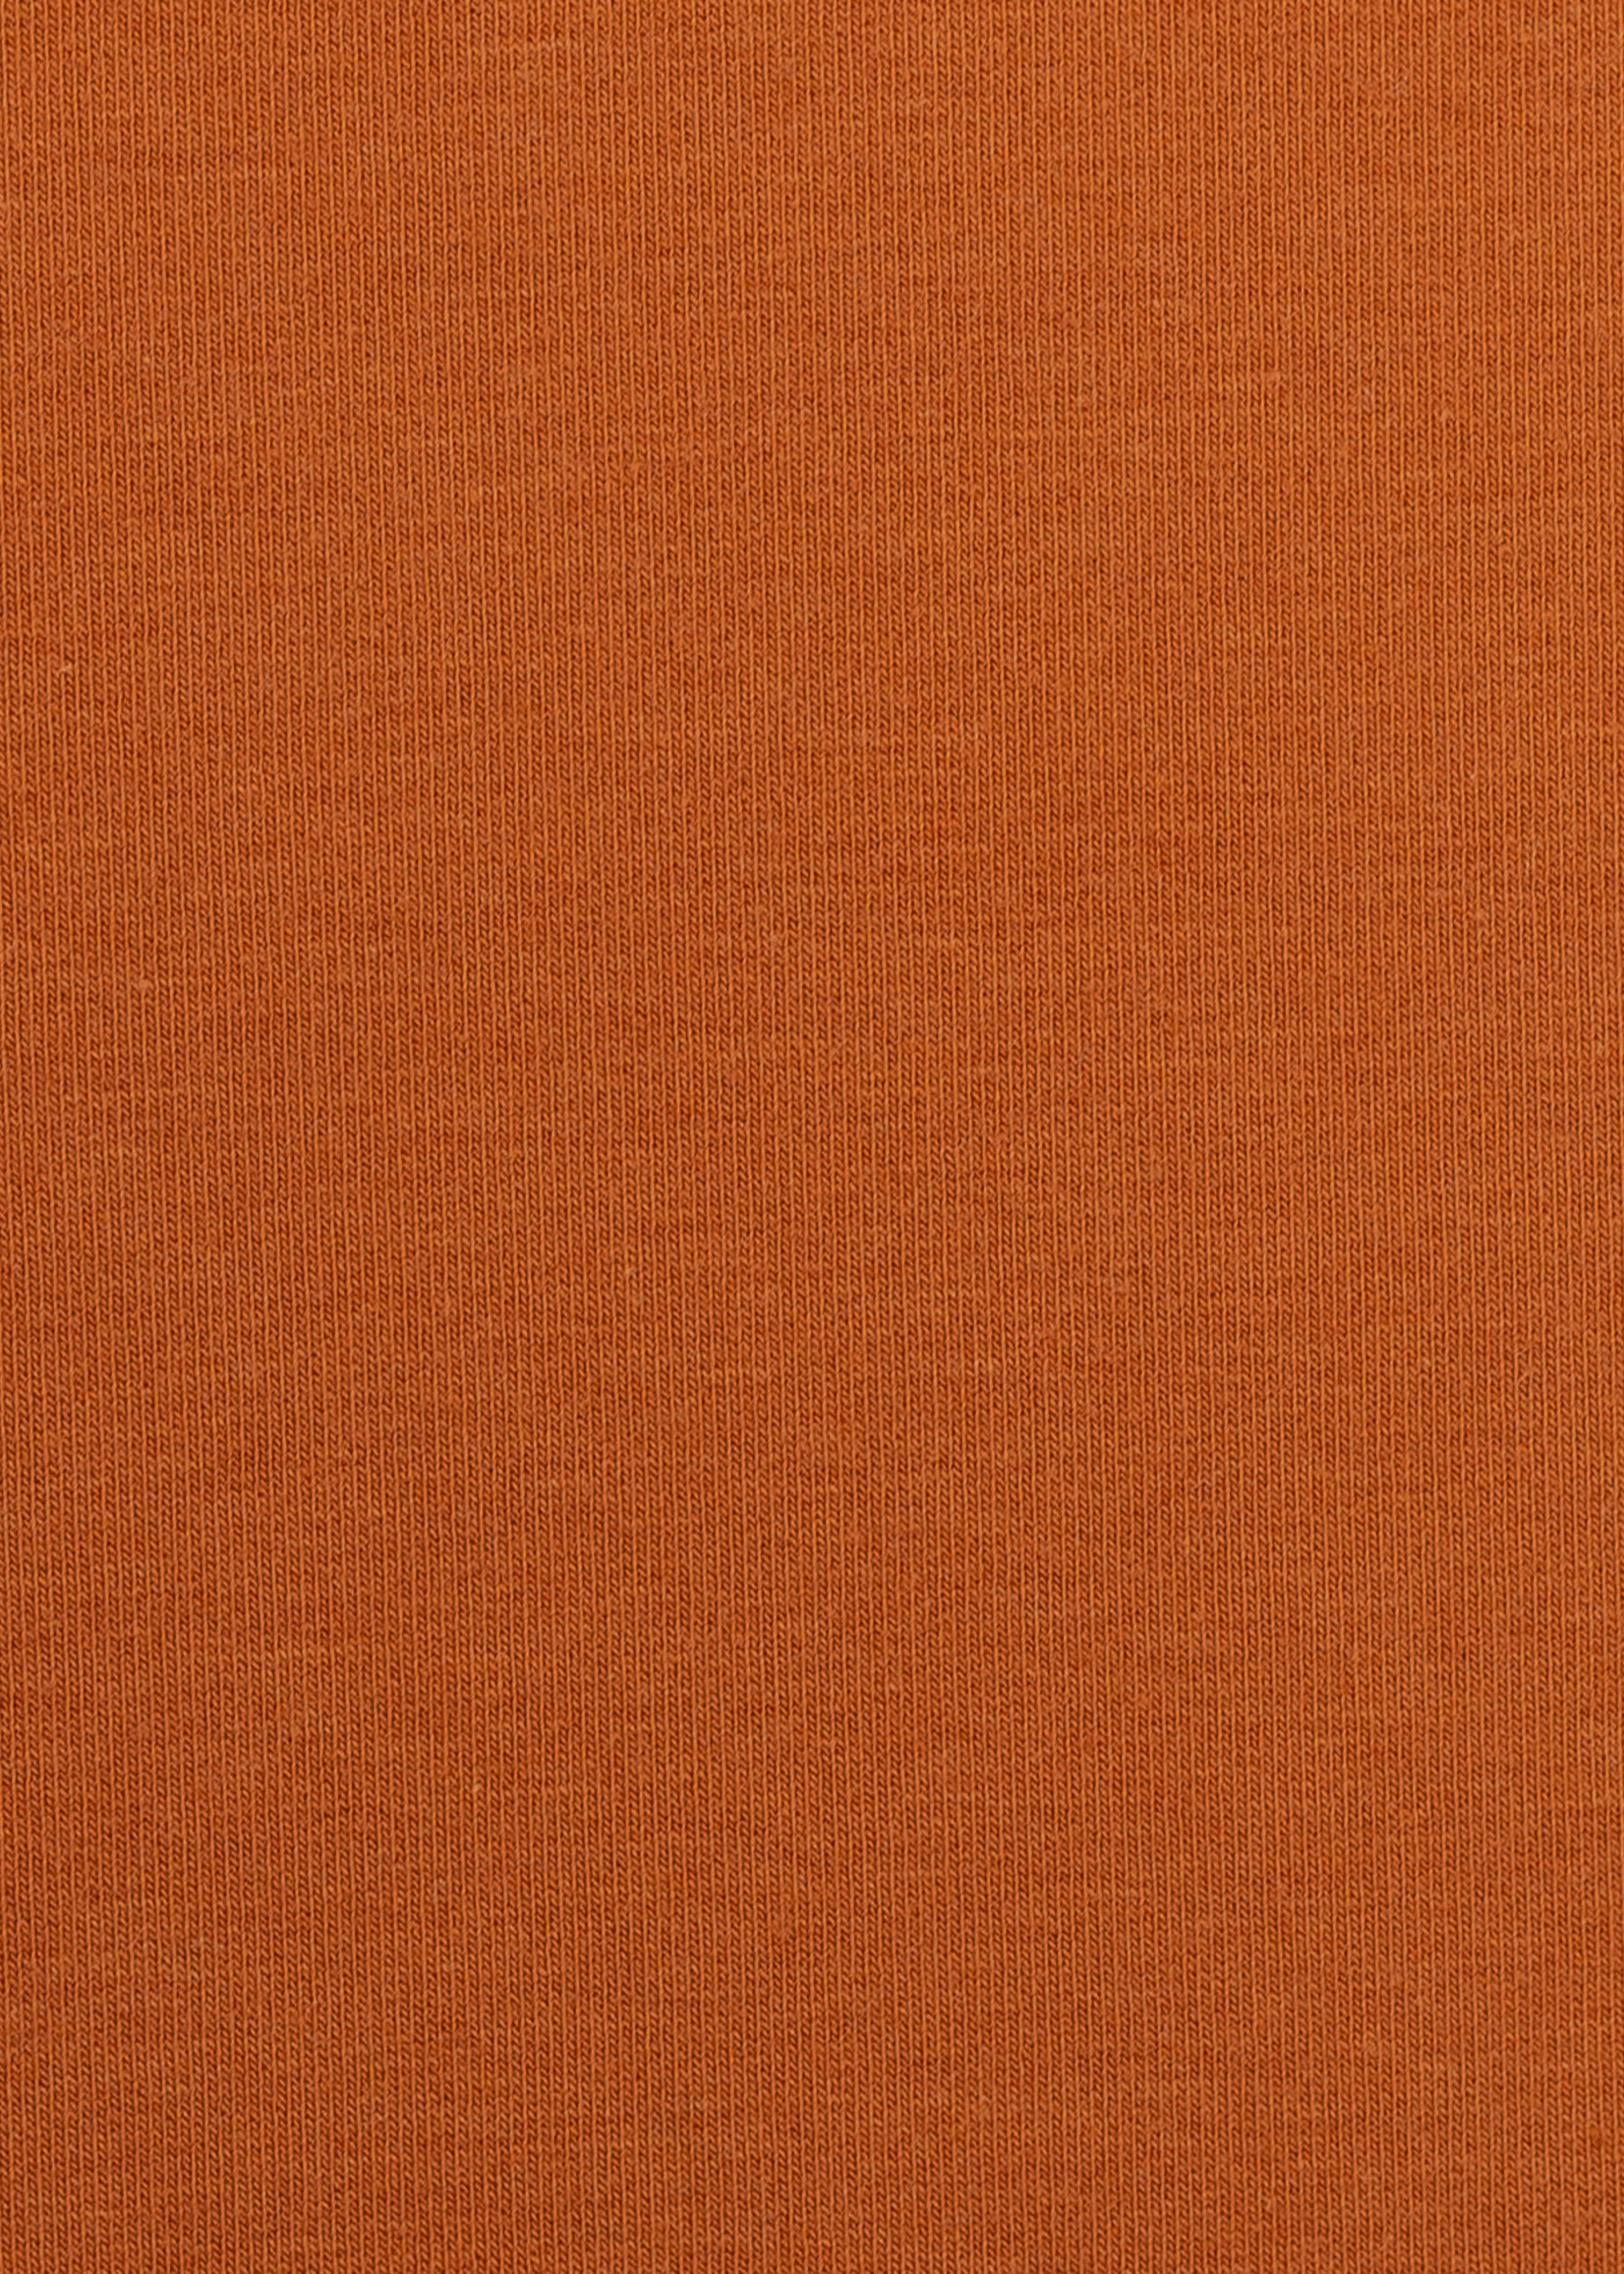 Stof Sweater - Oranje (635)